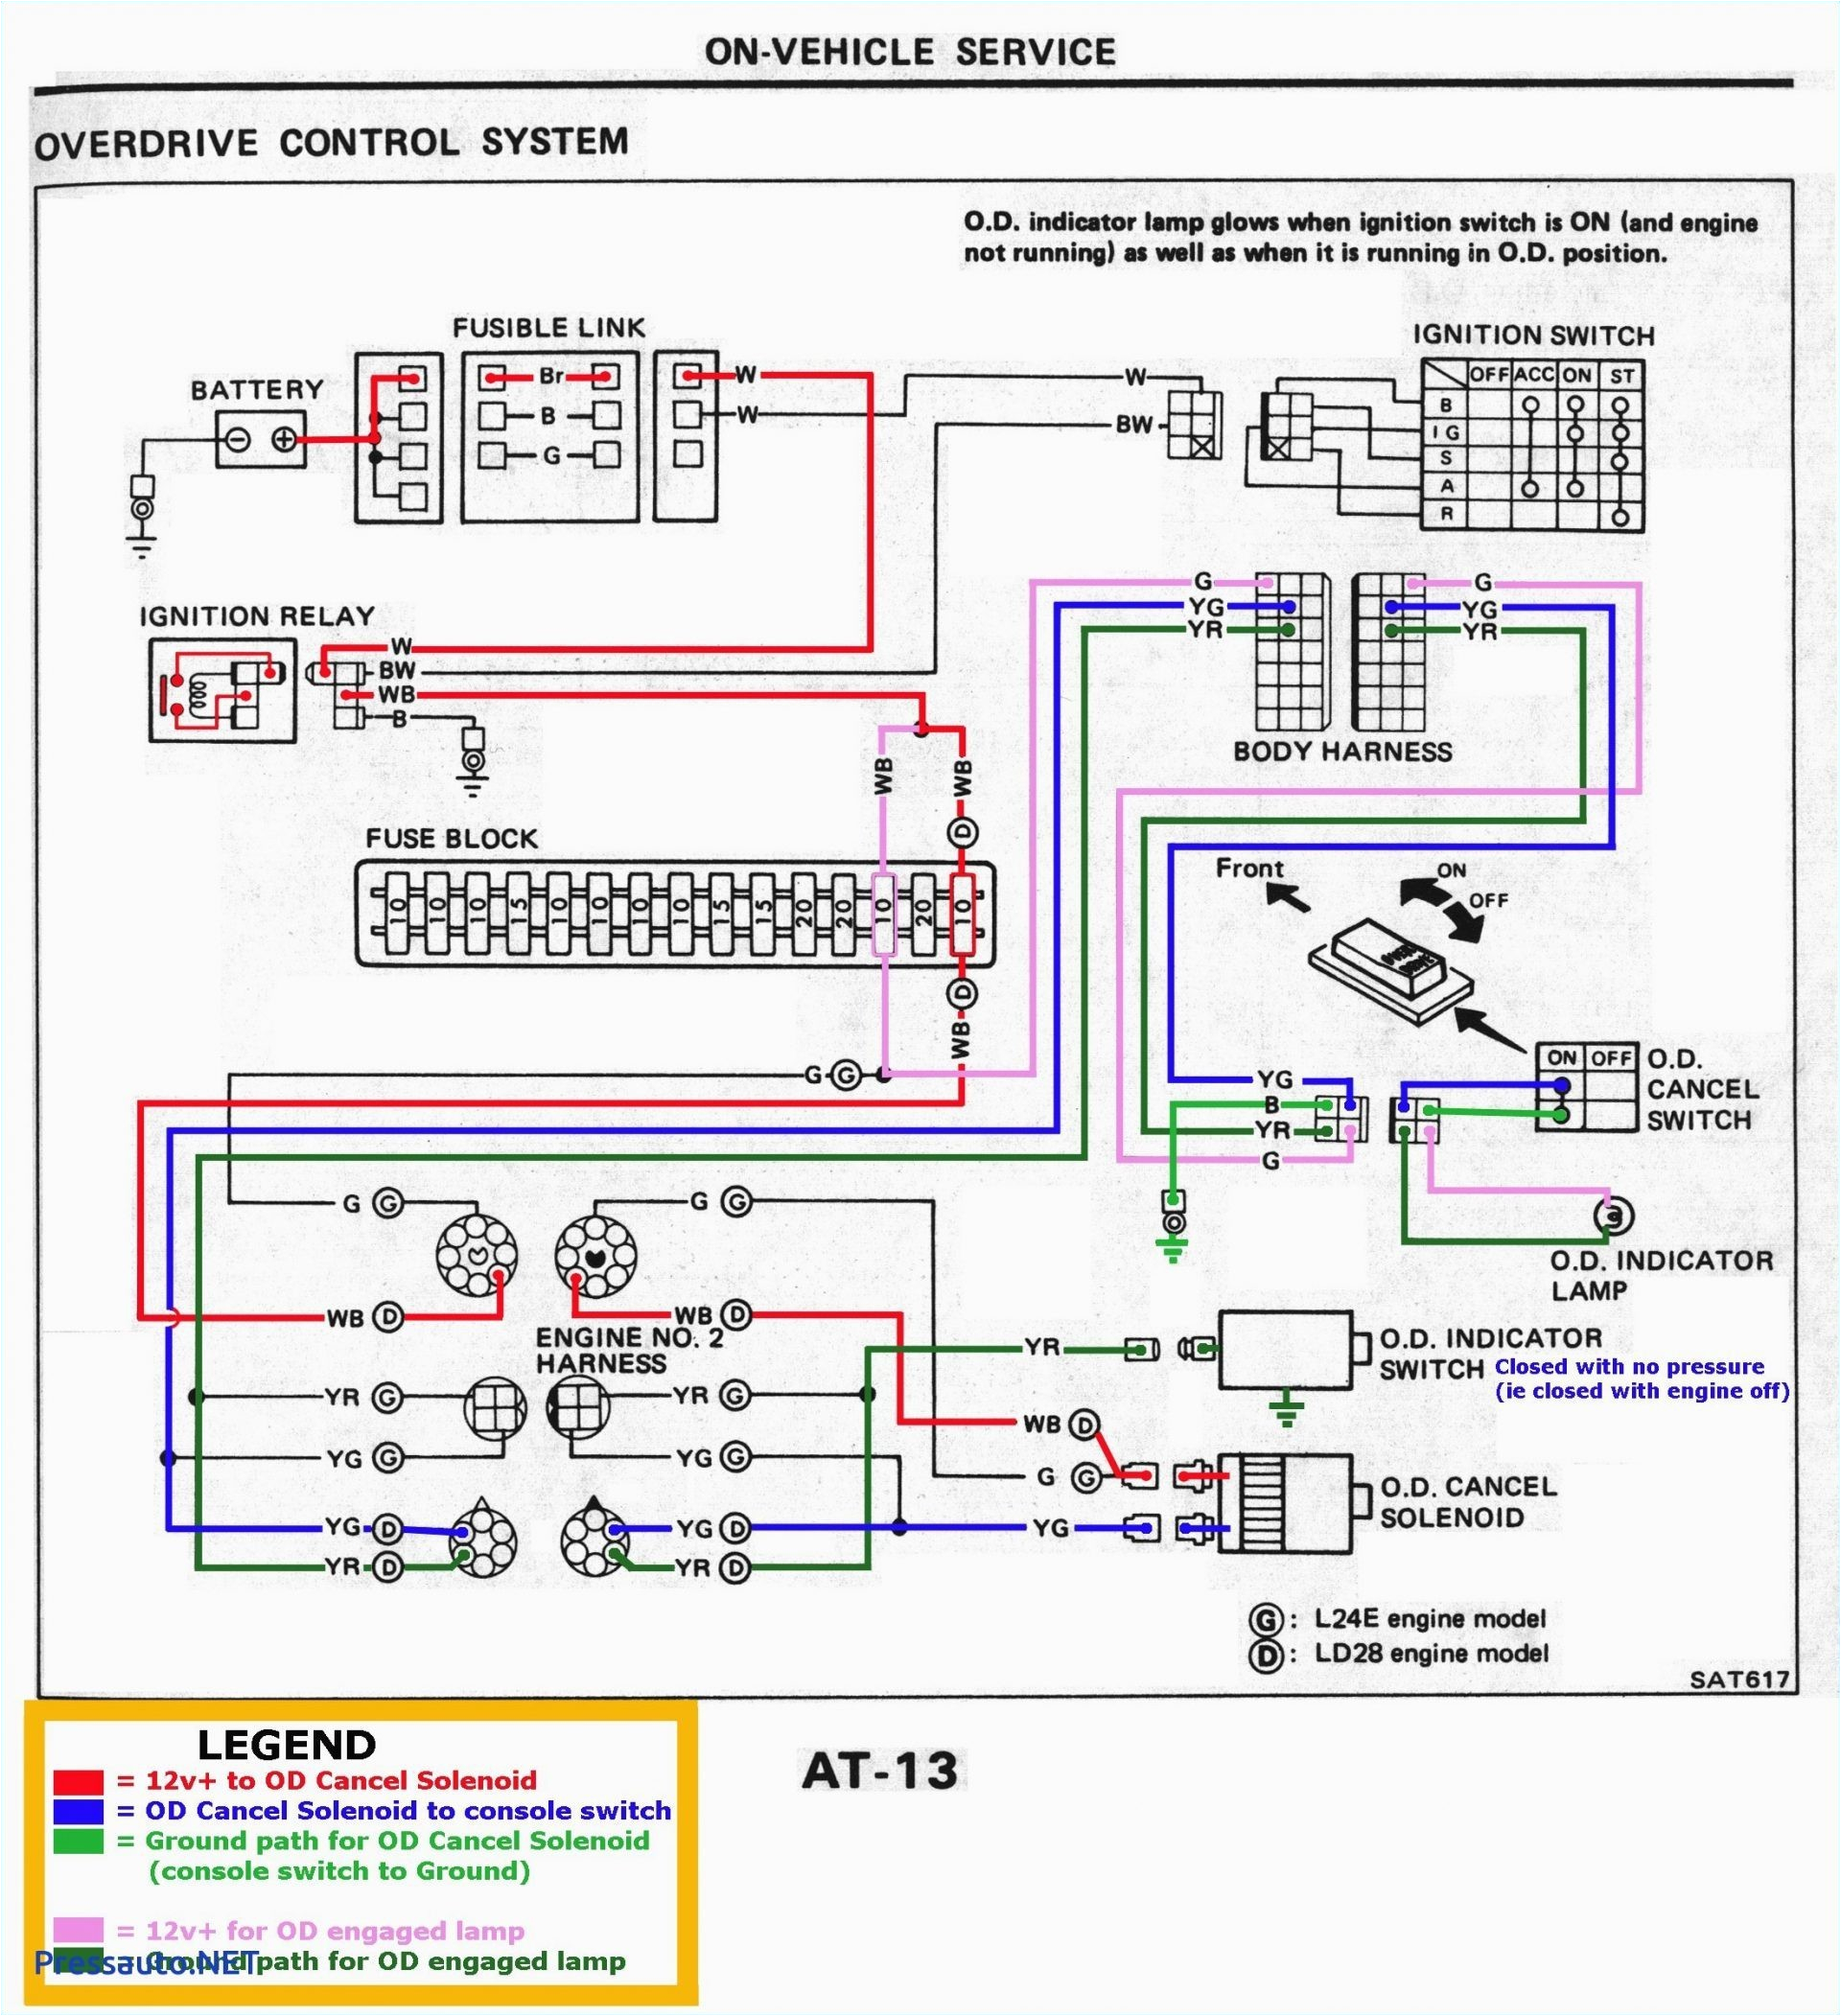 milnor wiring diagrams wiring diagram user milnor wiring diagrams